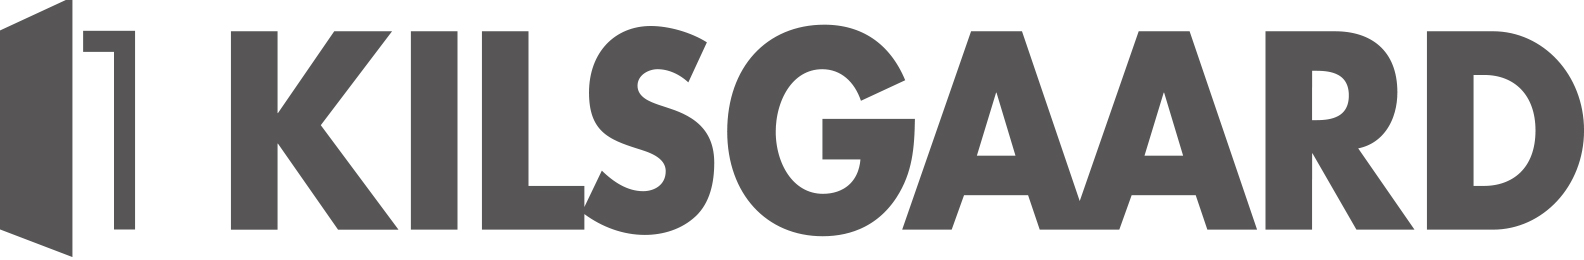 Kilsgaard_Logo